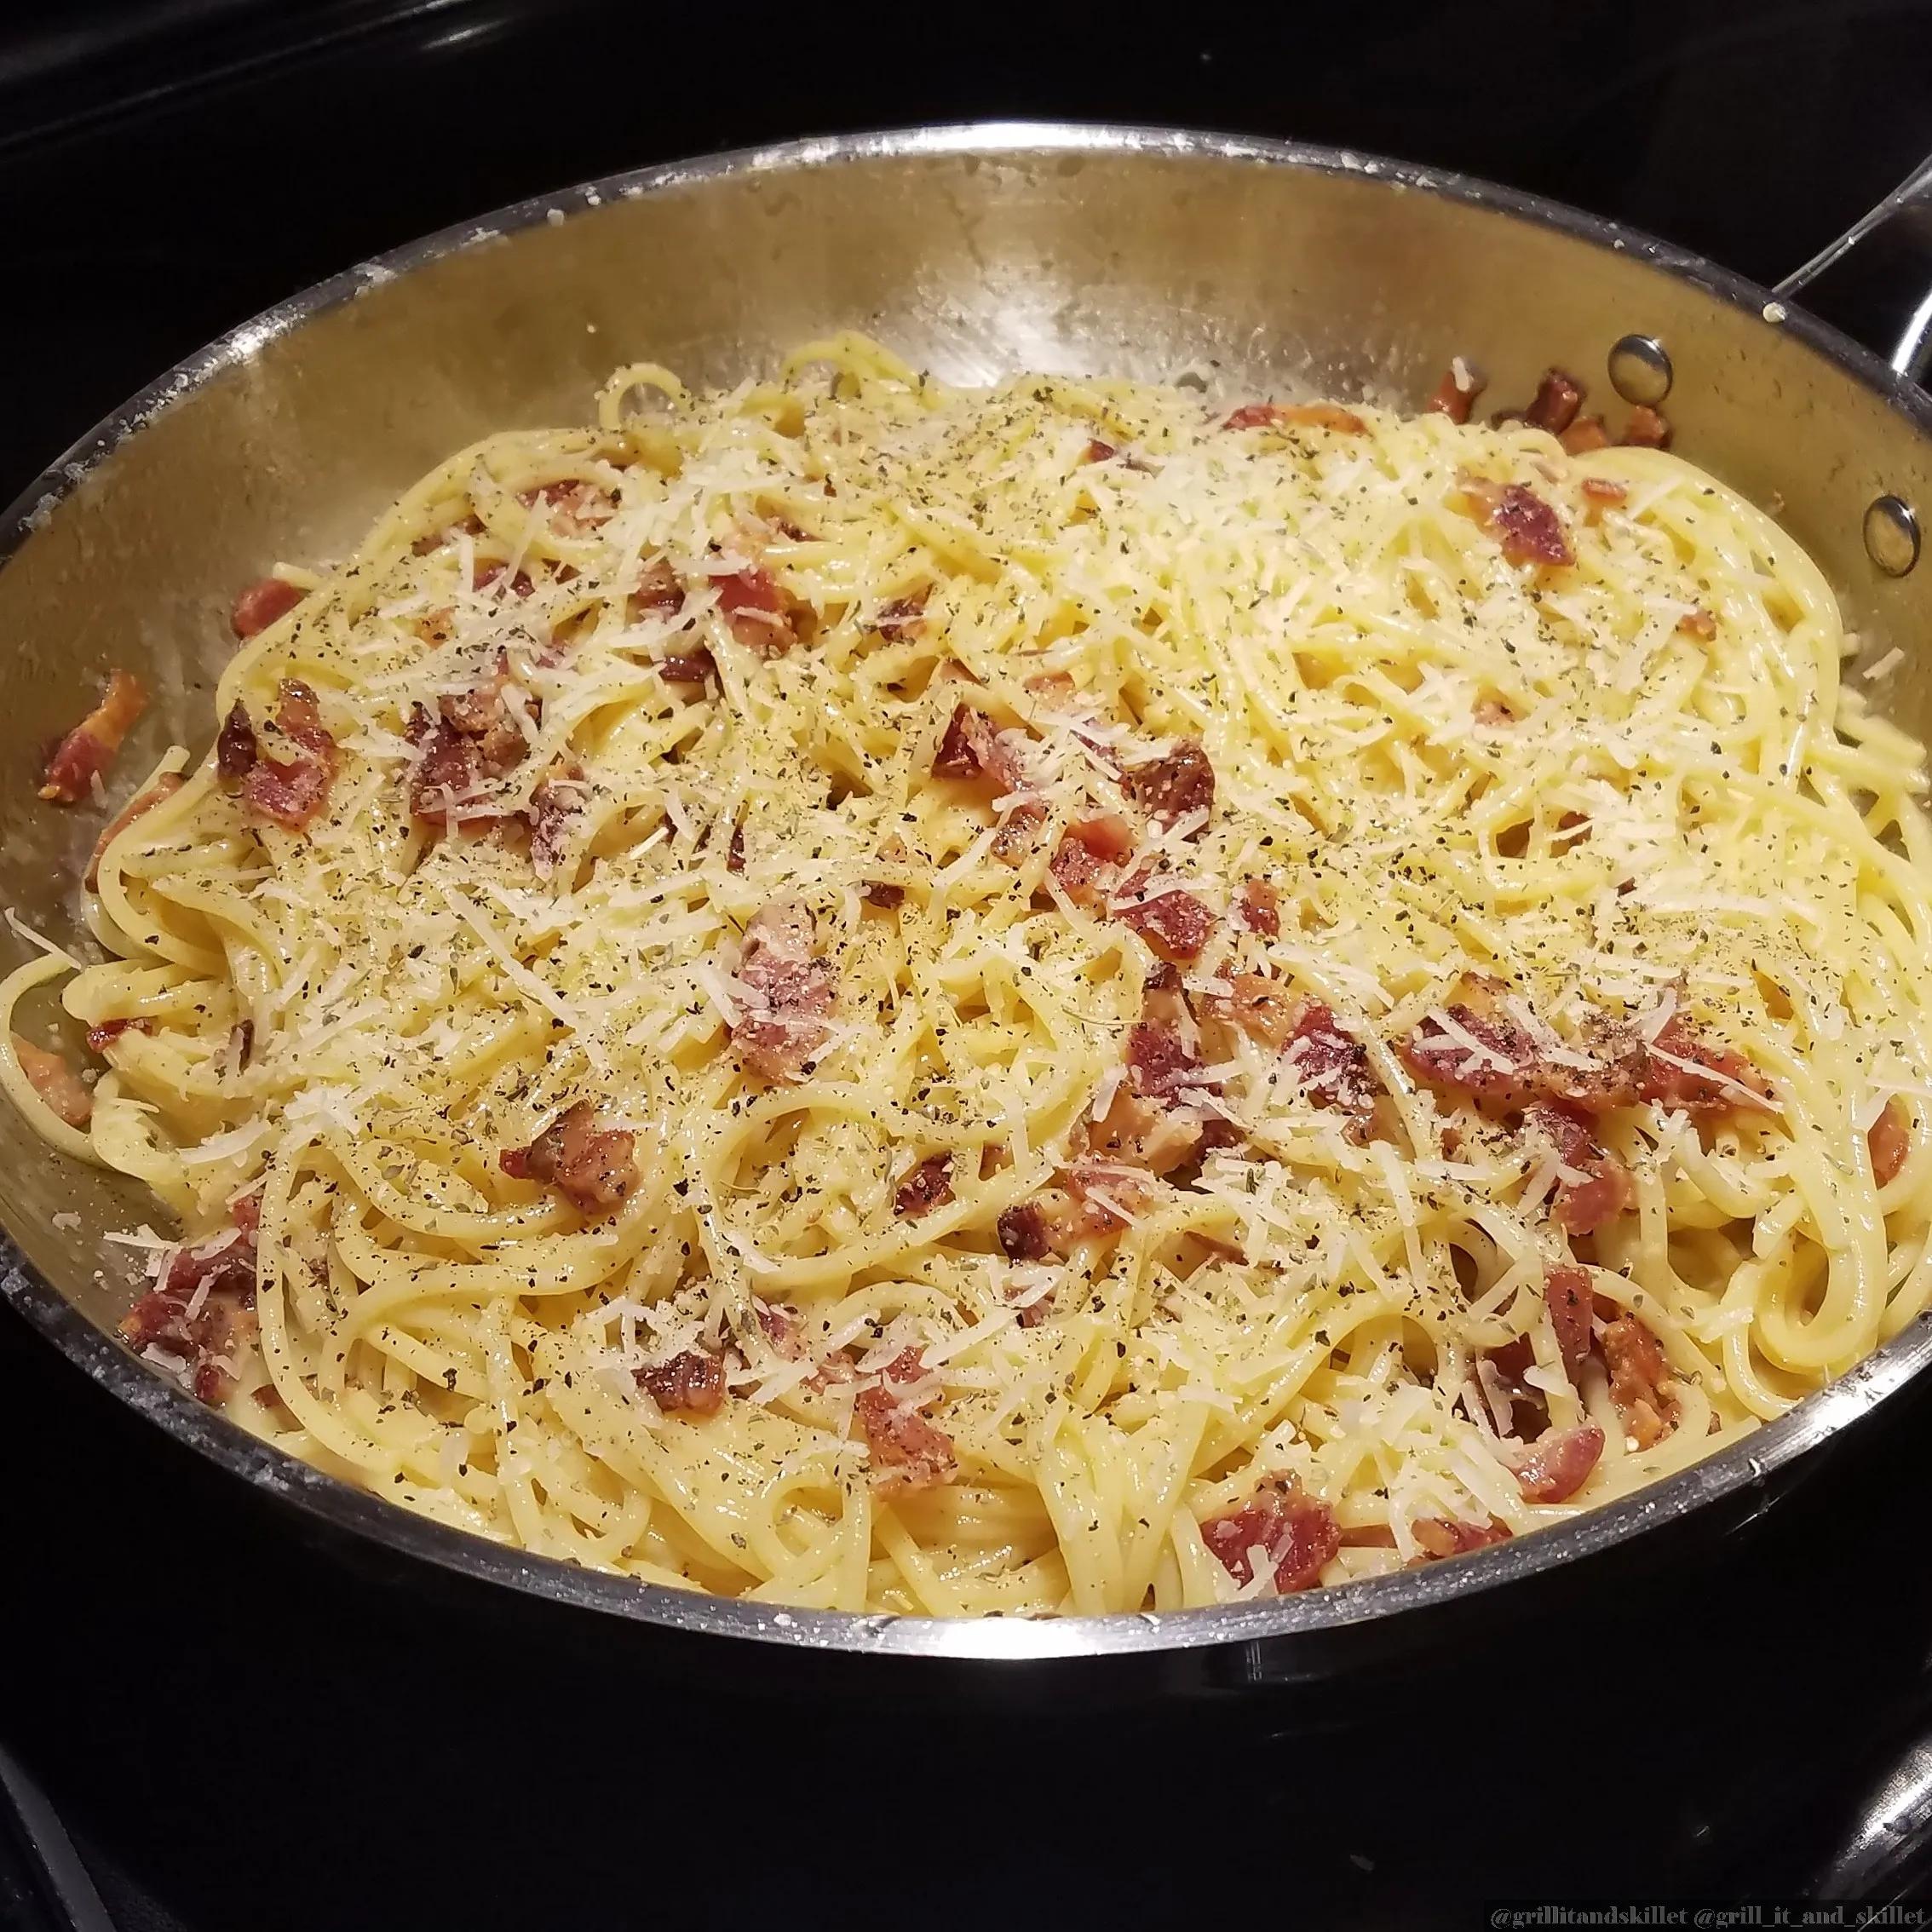 [Homemade] Spaghetti alla Carbonara. Recipe in comments. : r/FoodPorn